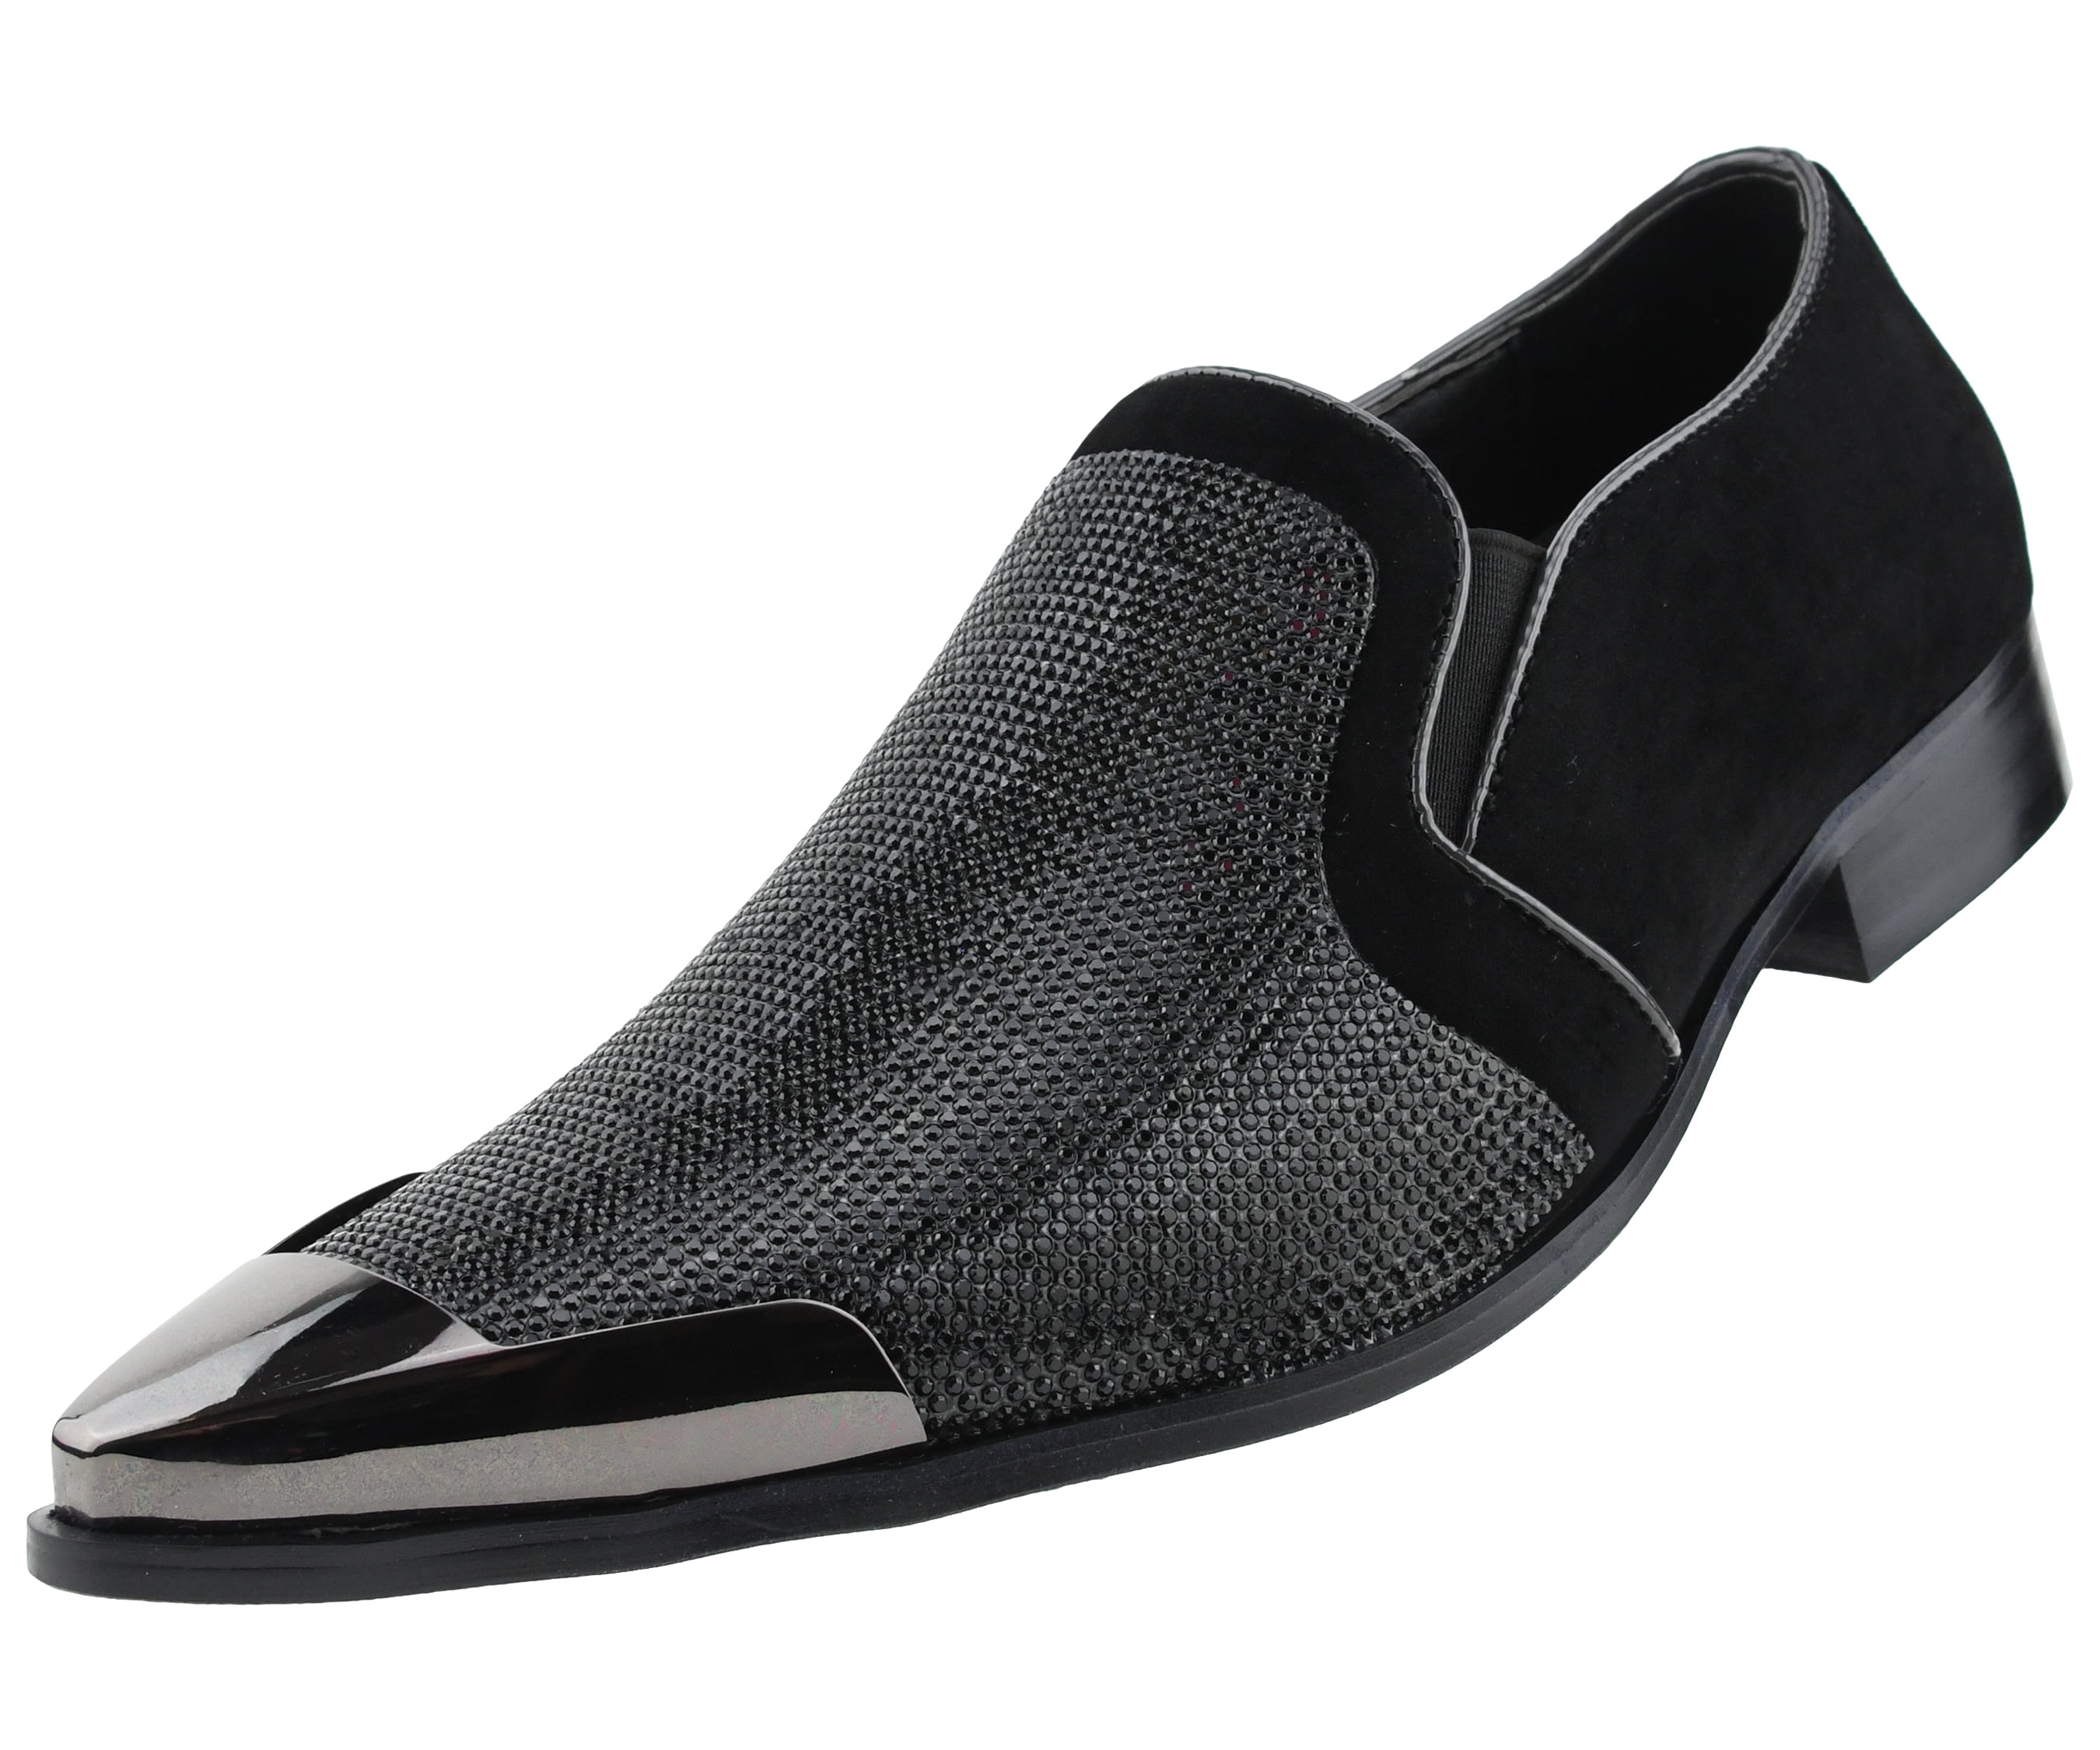 New Mens Italian Design Metal Toe Slip On Shoes Colour Black Size 7 8 9 10 11 